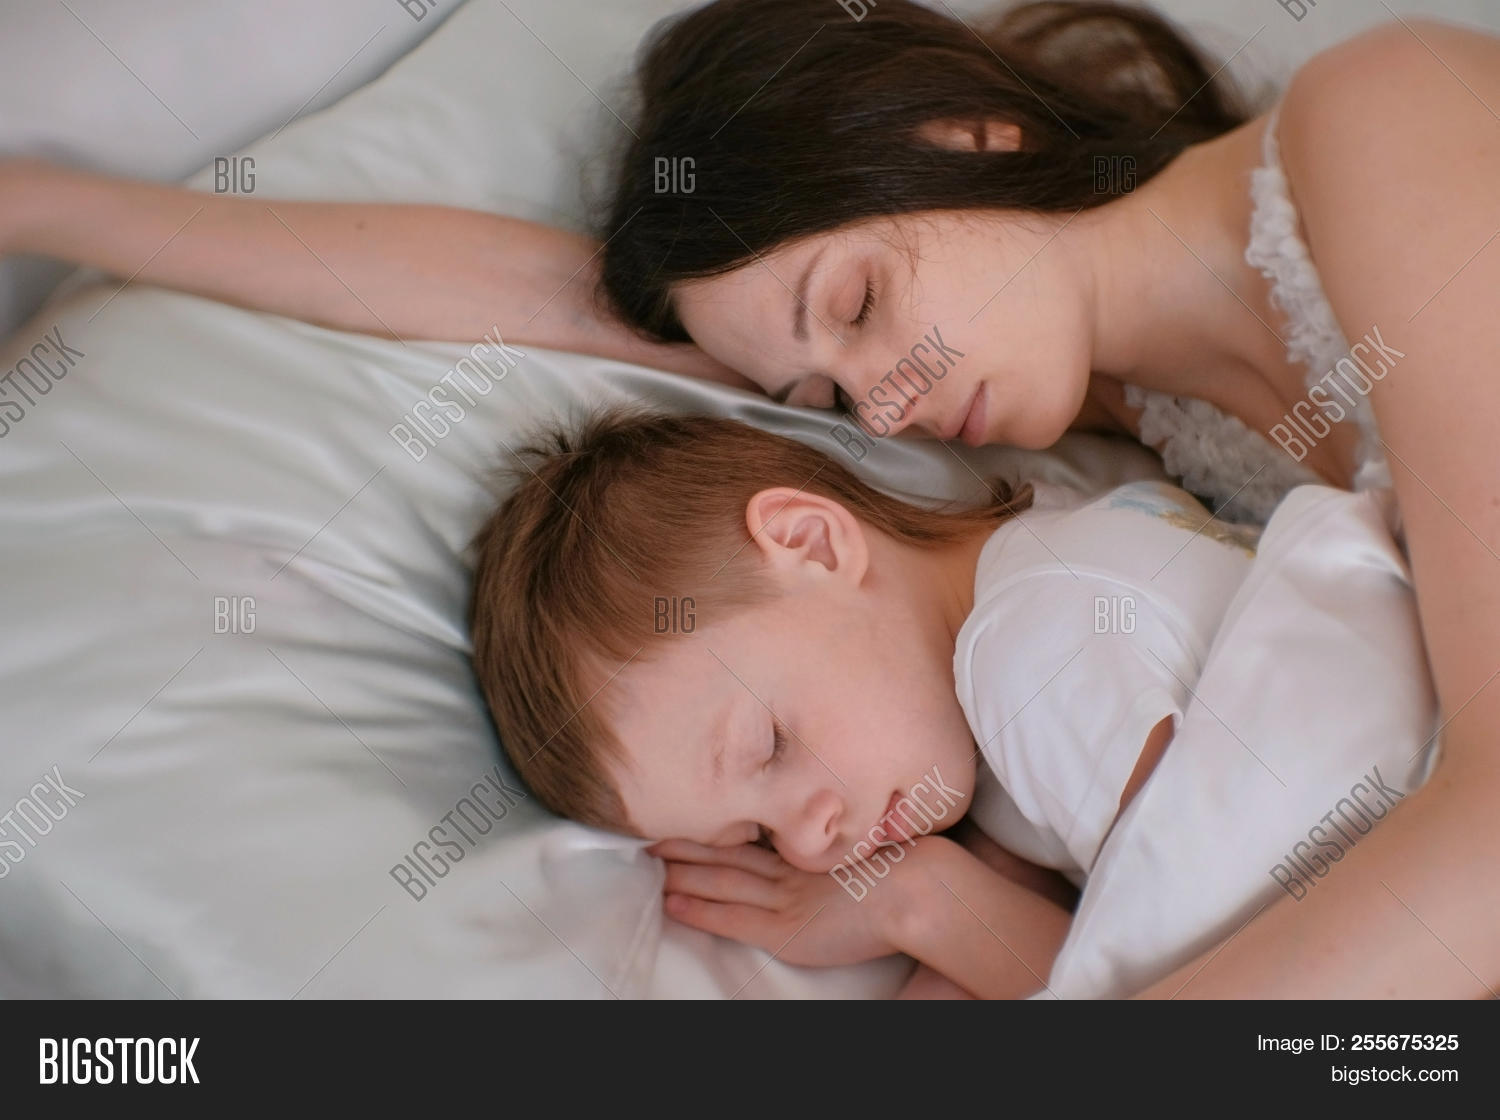 adrian maisonet share mom son sleep together photos